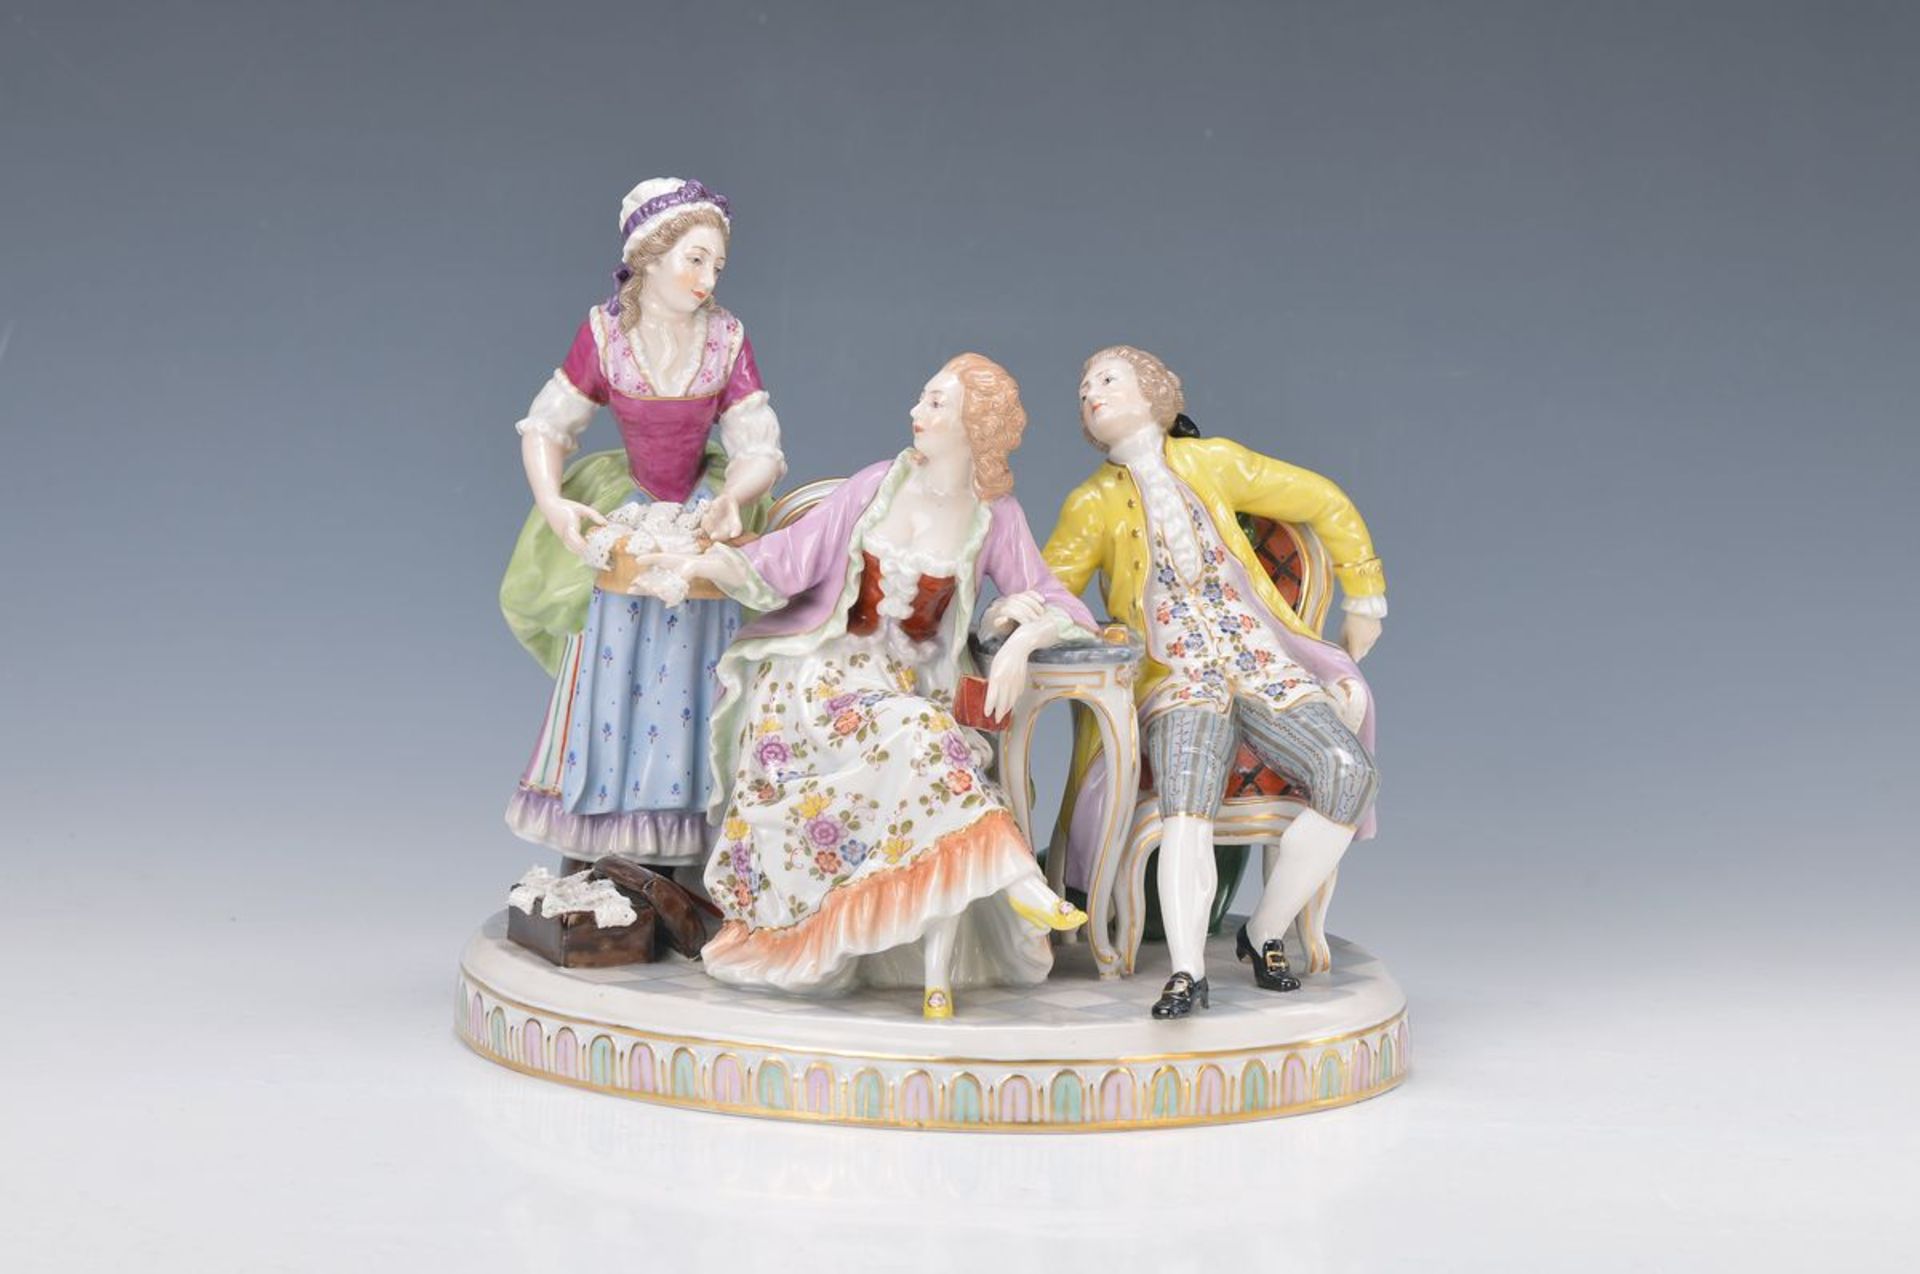 Porzellanfigurengruppe, Thüringen, um 1900-10, Galantes Paar mit Spitzenborten Verkäuferin, bunt